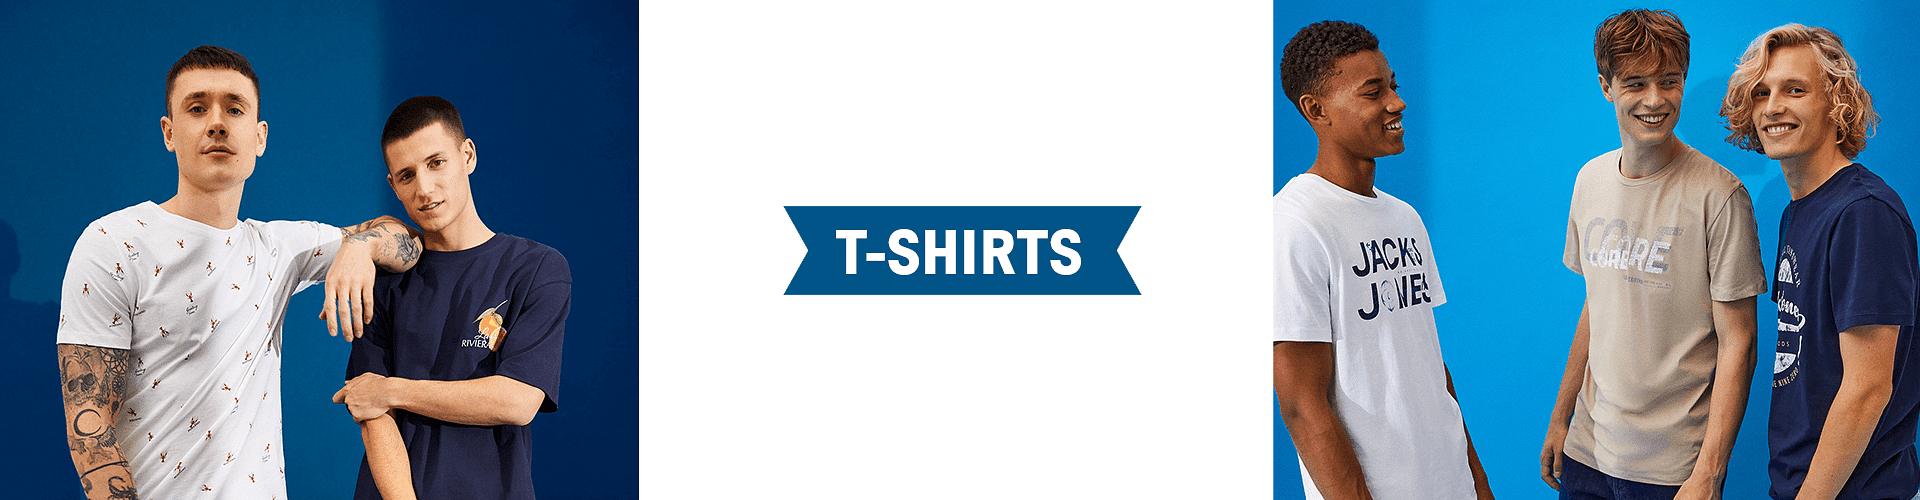 Best Men's T-Shirts in India, Buy Online